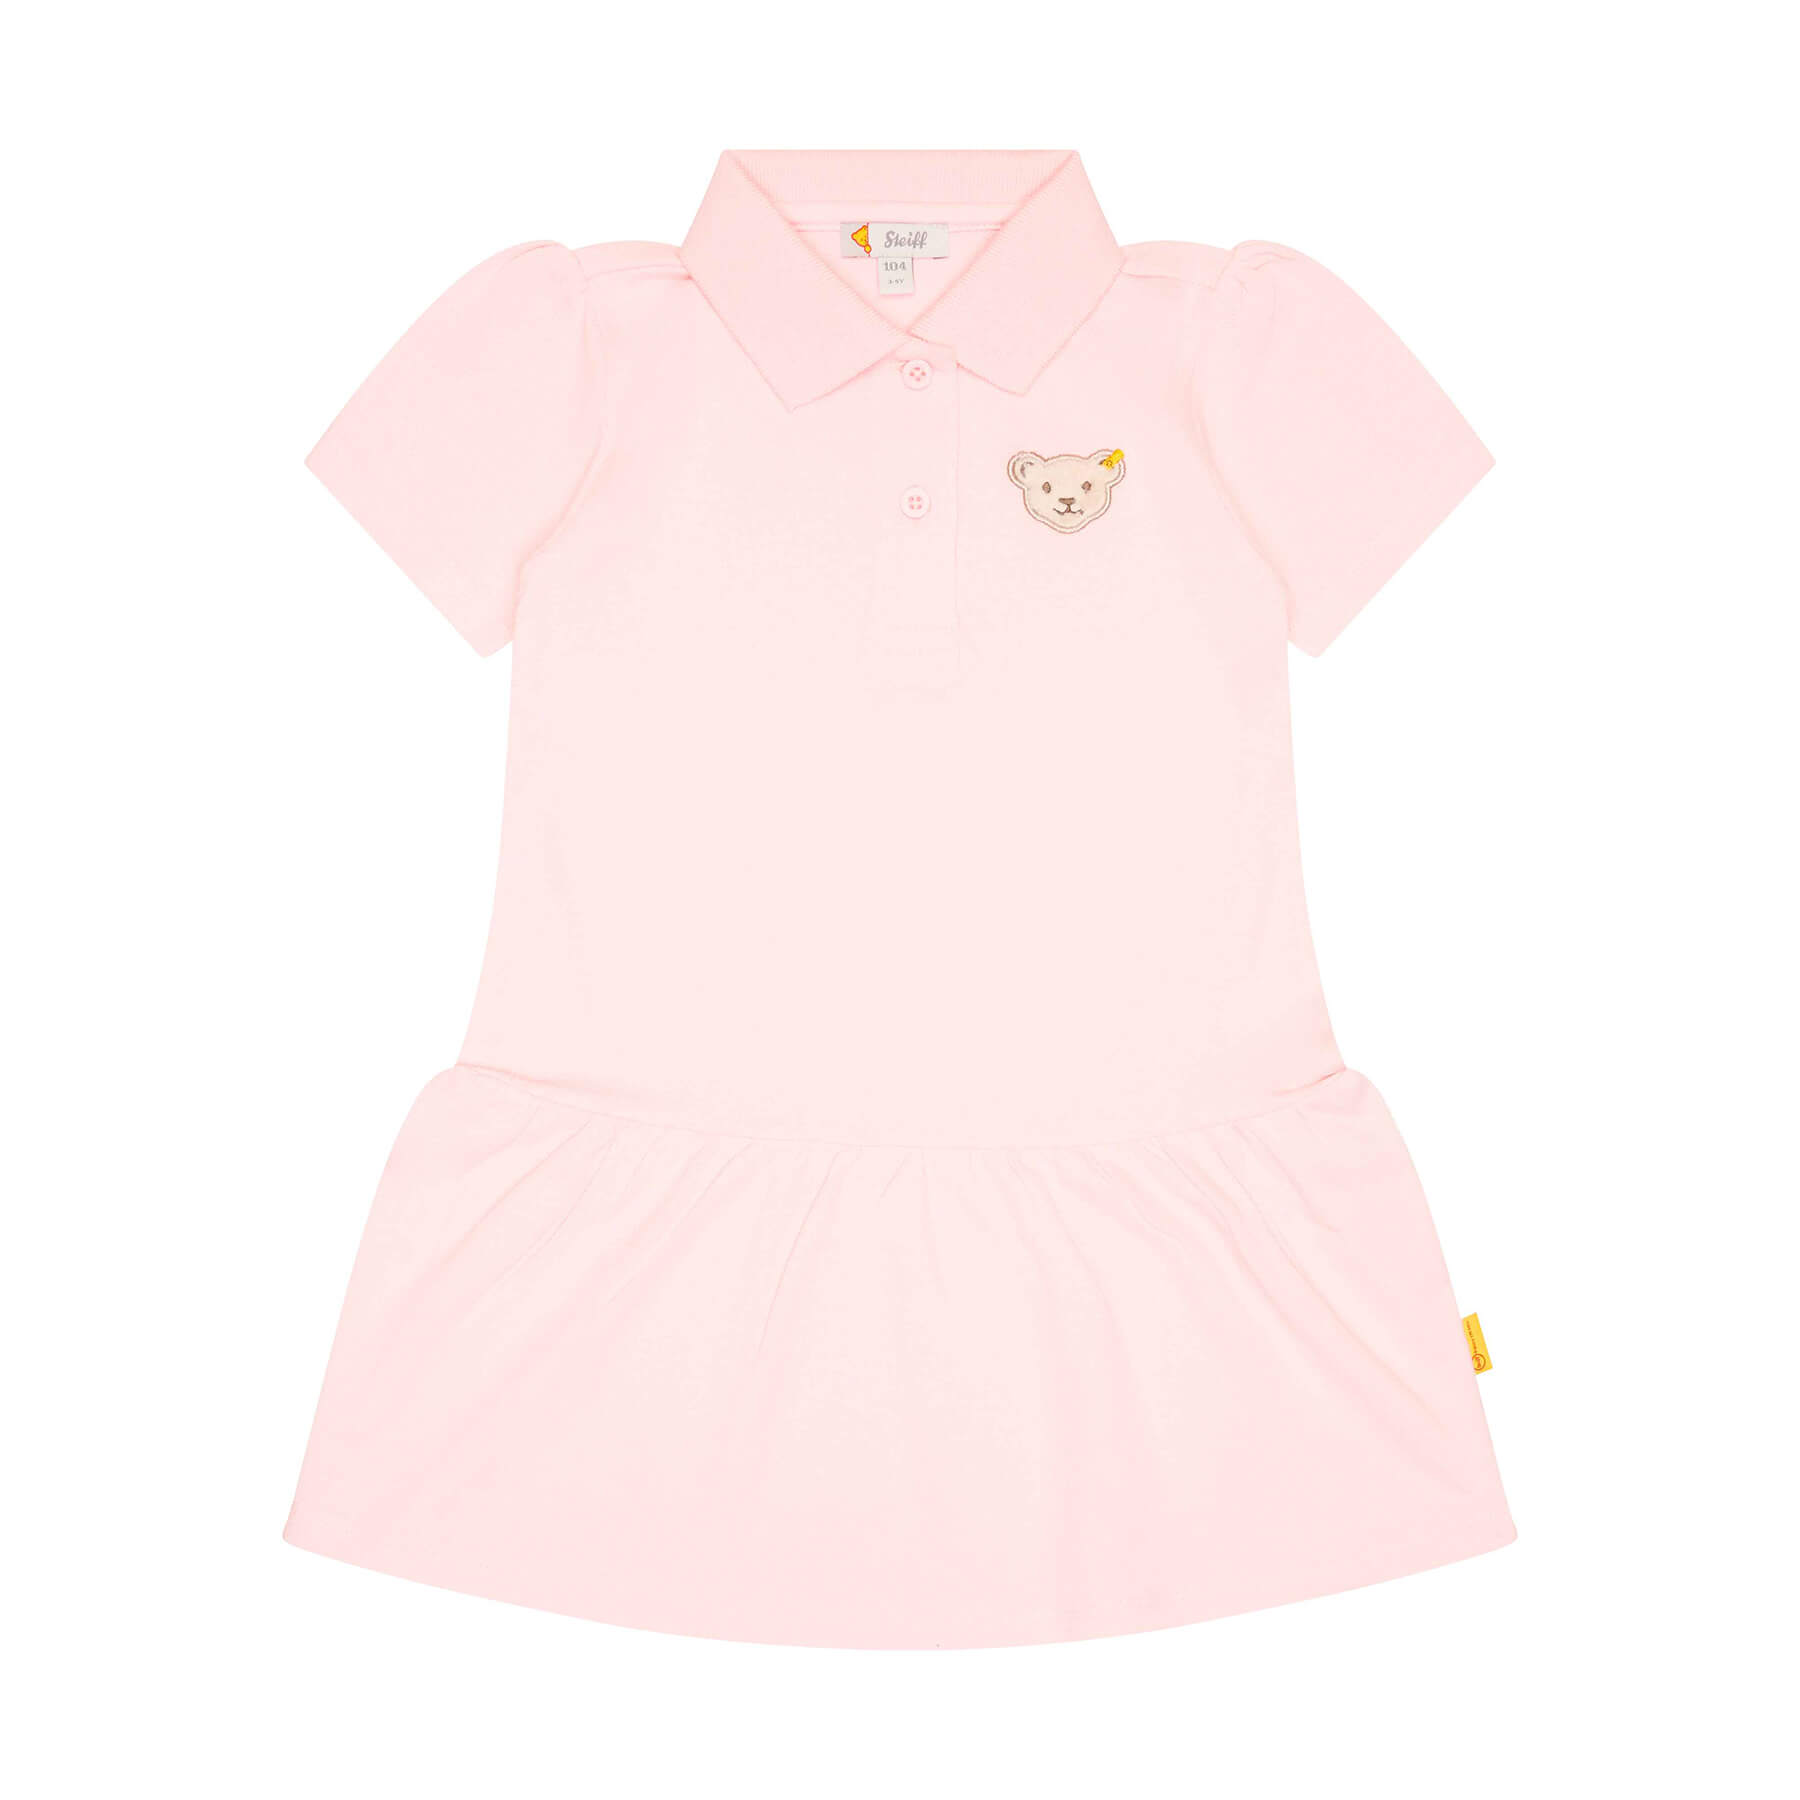 ワンピース ピンク 子供服 ベビー服 プレゼント ギフト 贈り物 出産祝い